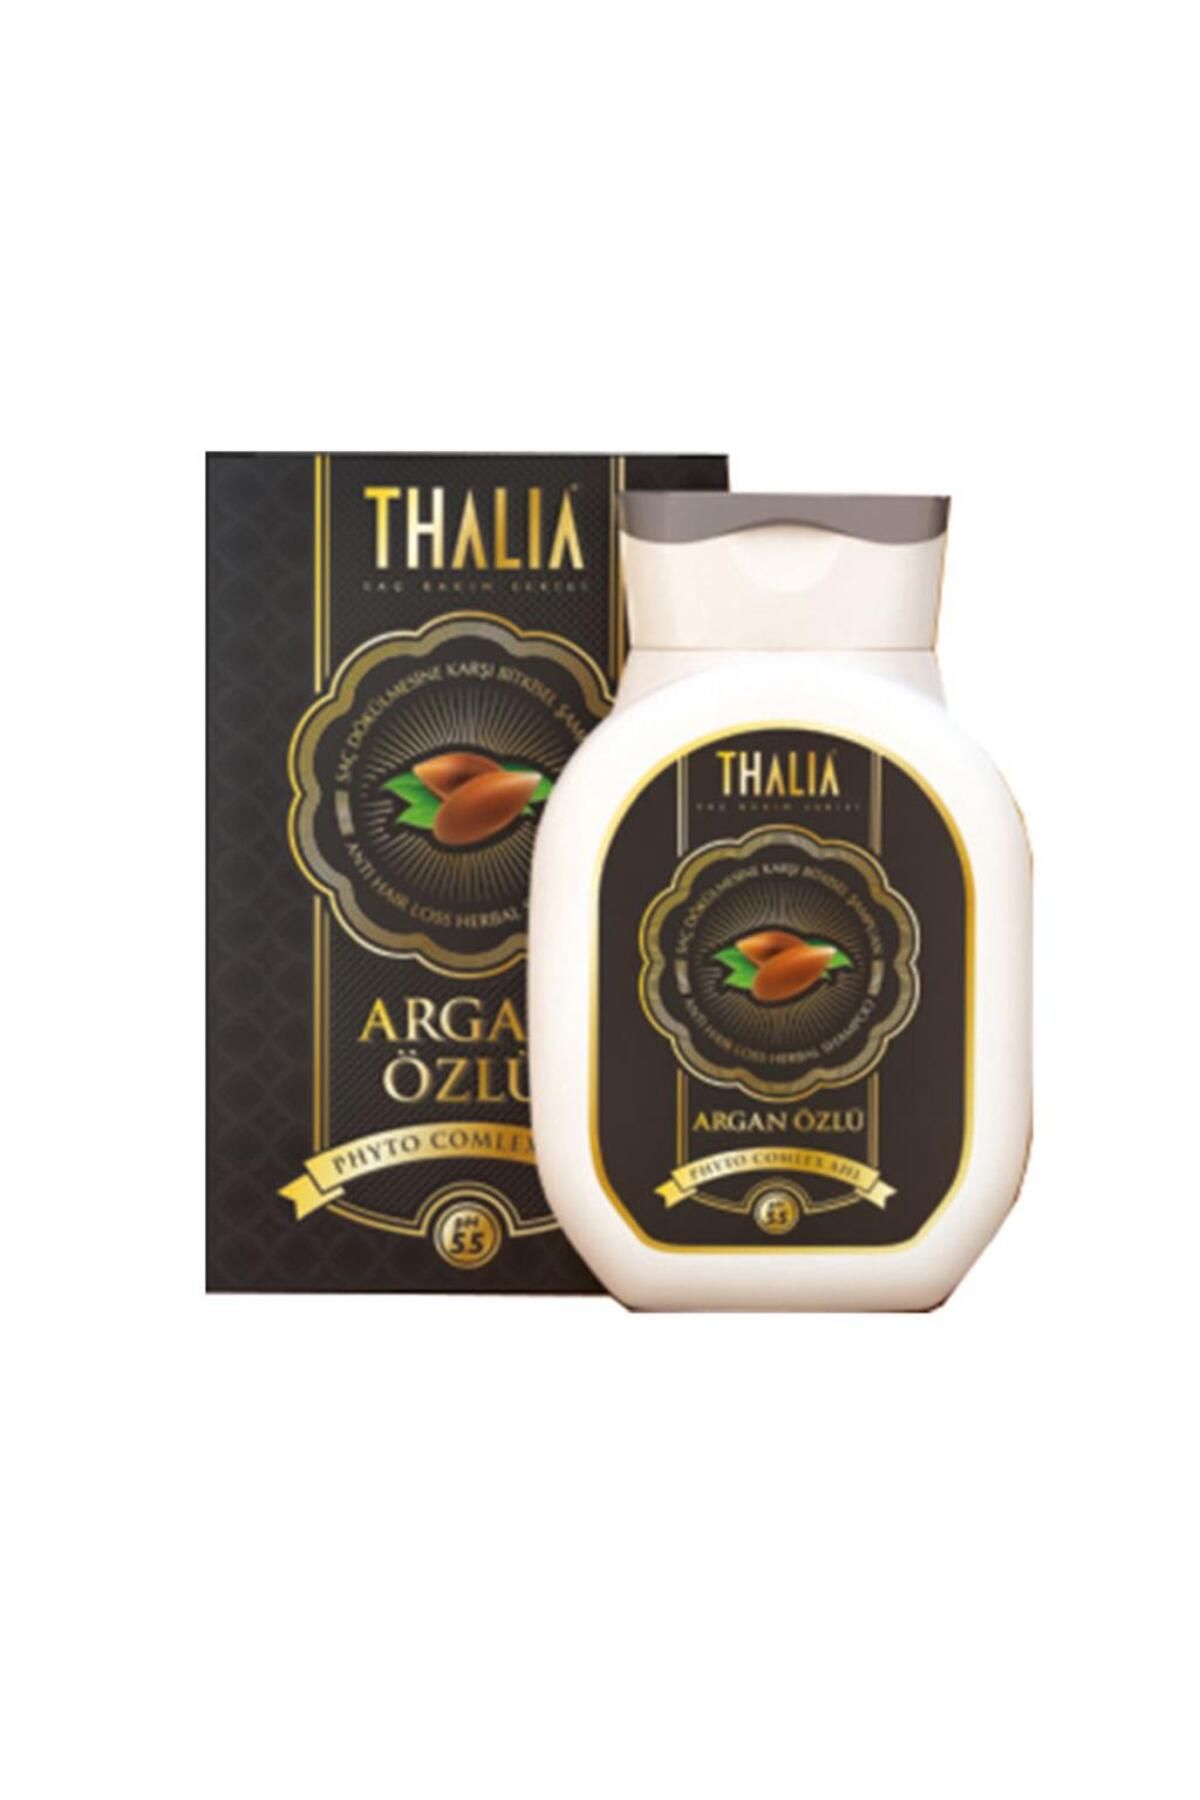 Thalia Argan Özlü Bitkisel Yağlı Karışımlı Şampuanı 300ml